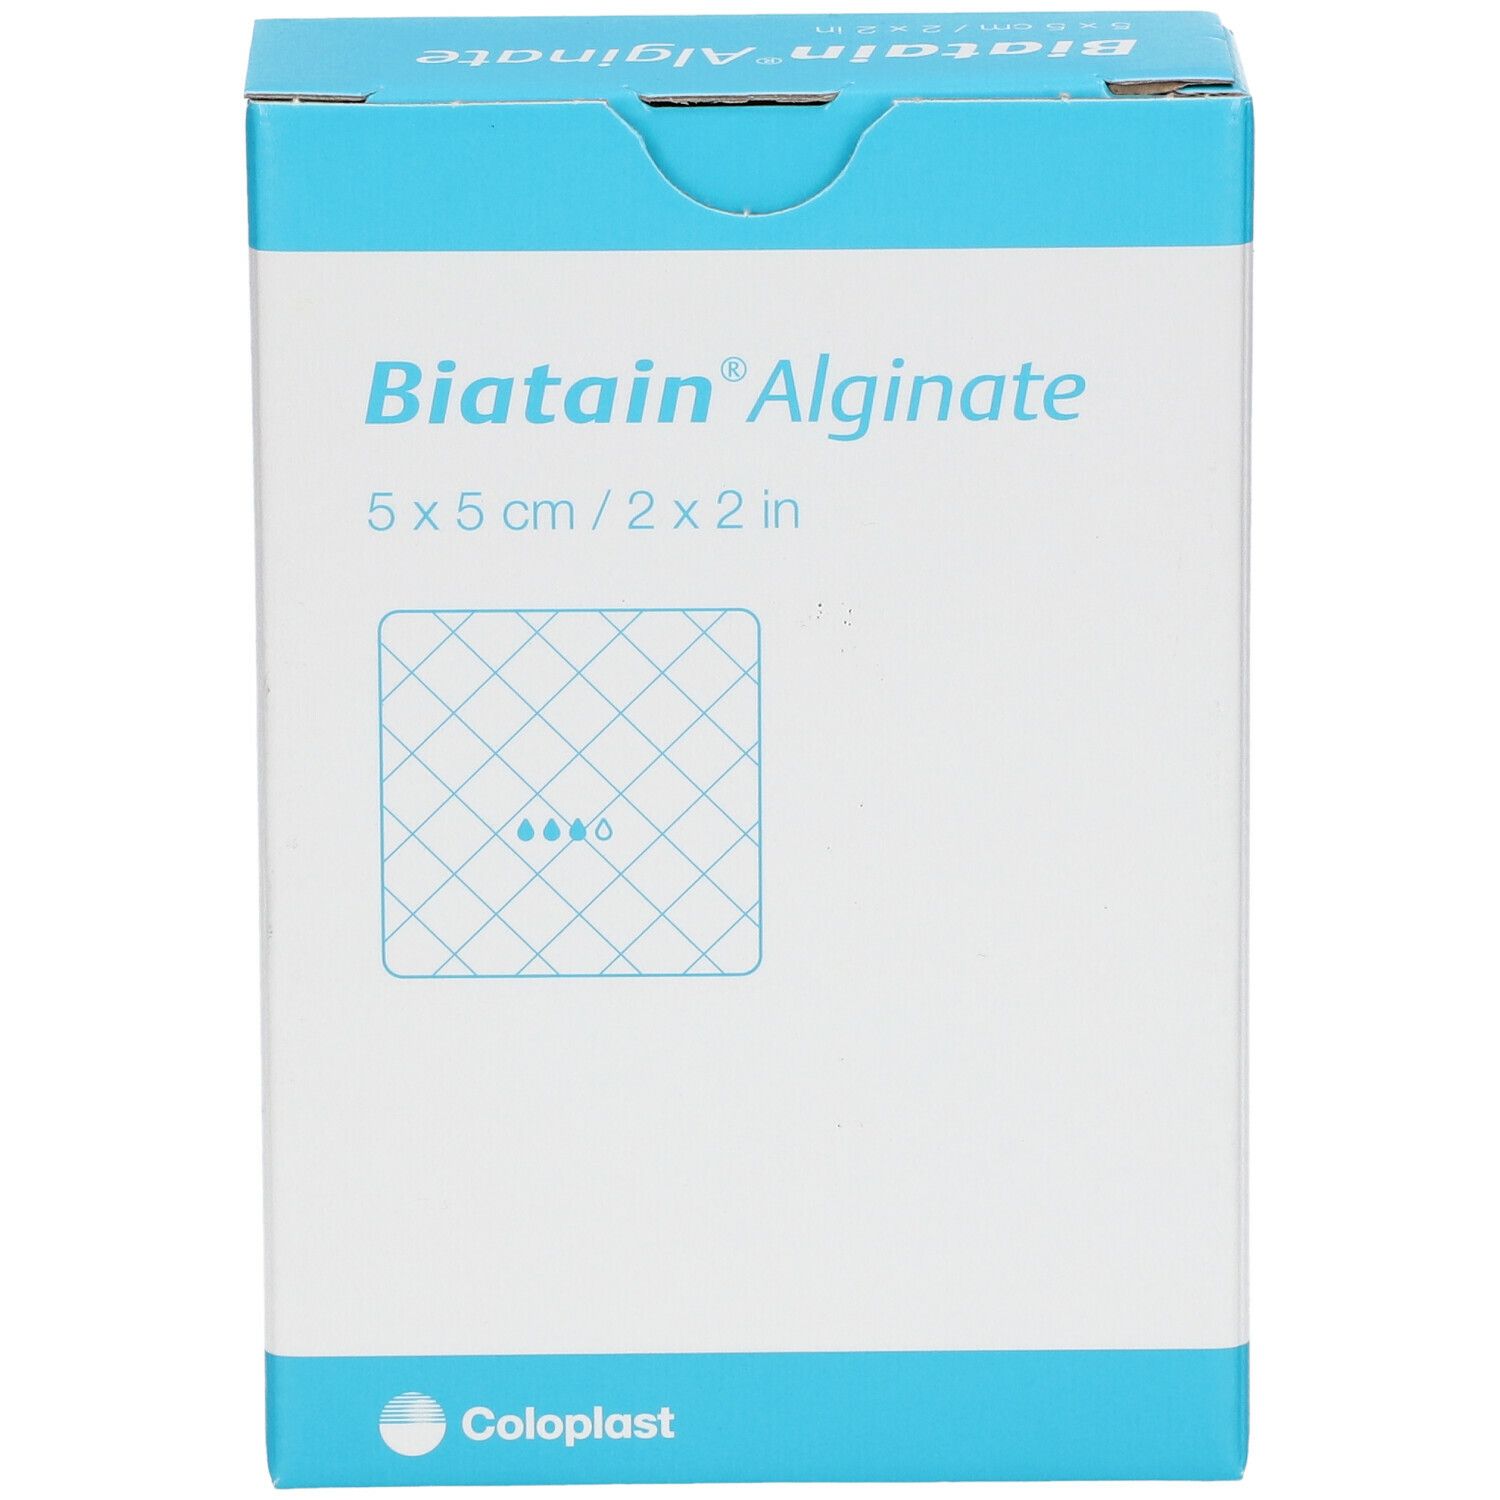 BIATAIN® Alginate 5 x 5 cm